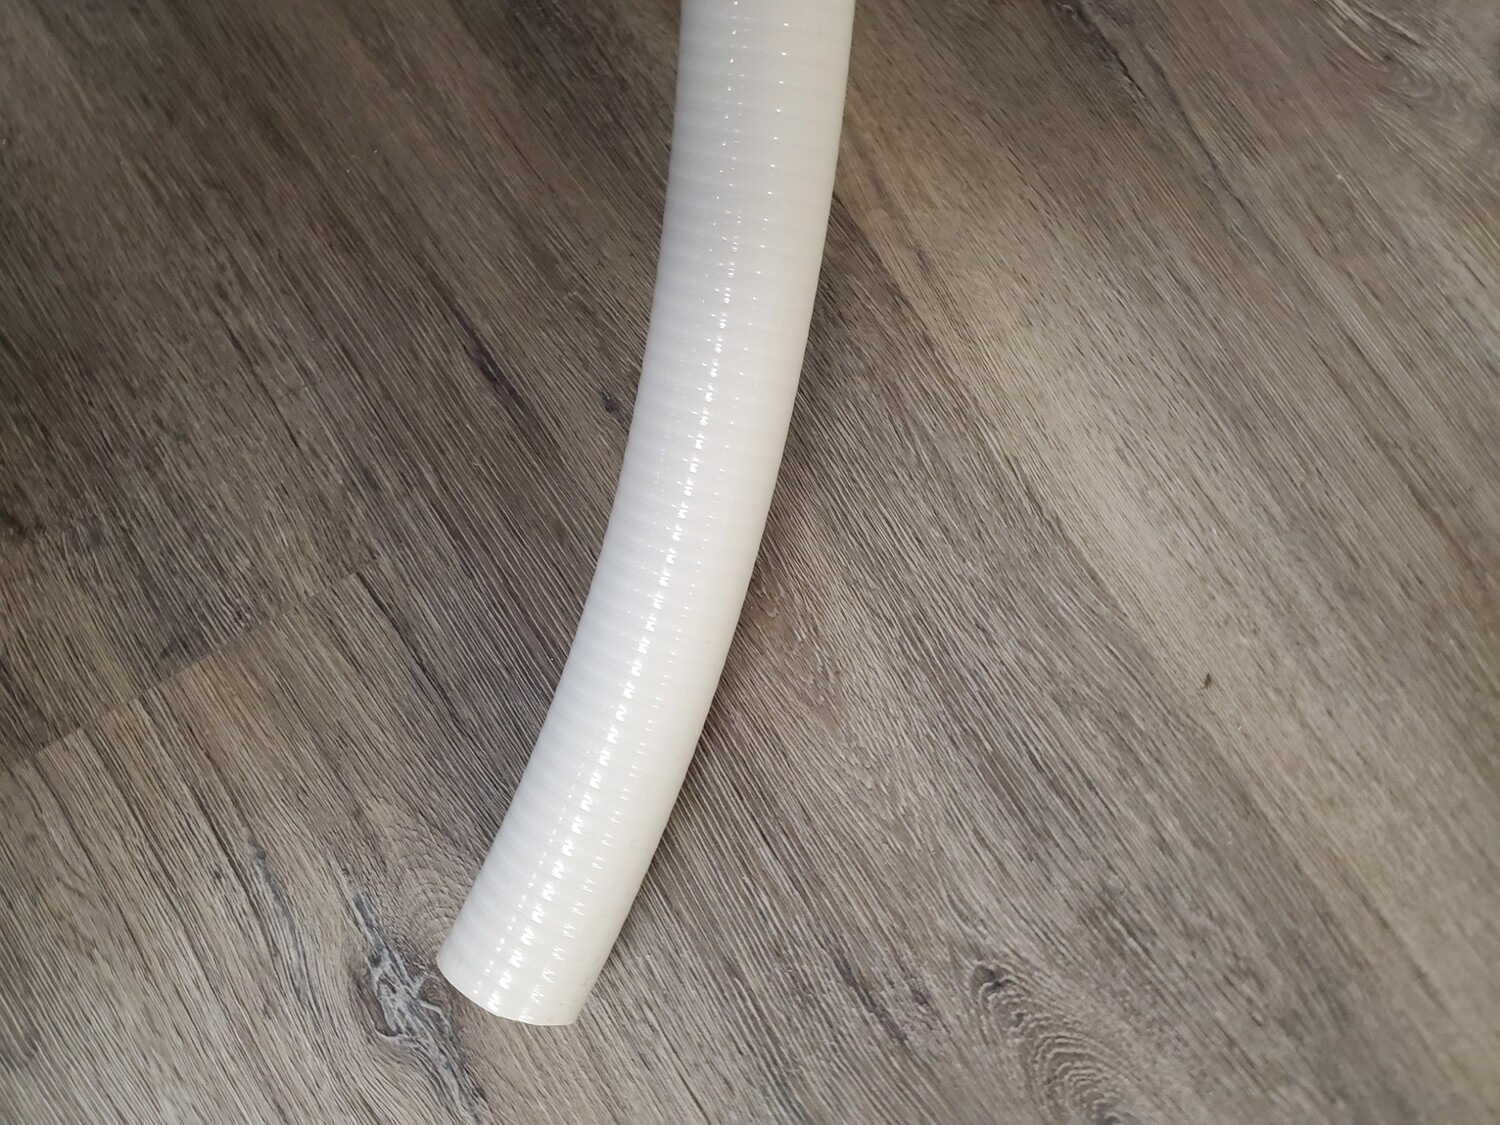 1.5IN PVC FLEX HOSE / PIPE - PER FOOT